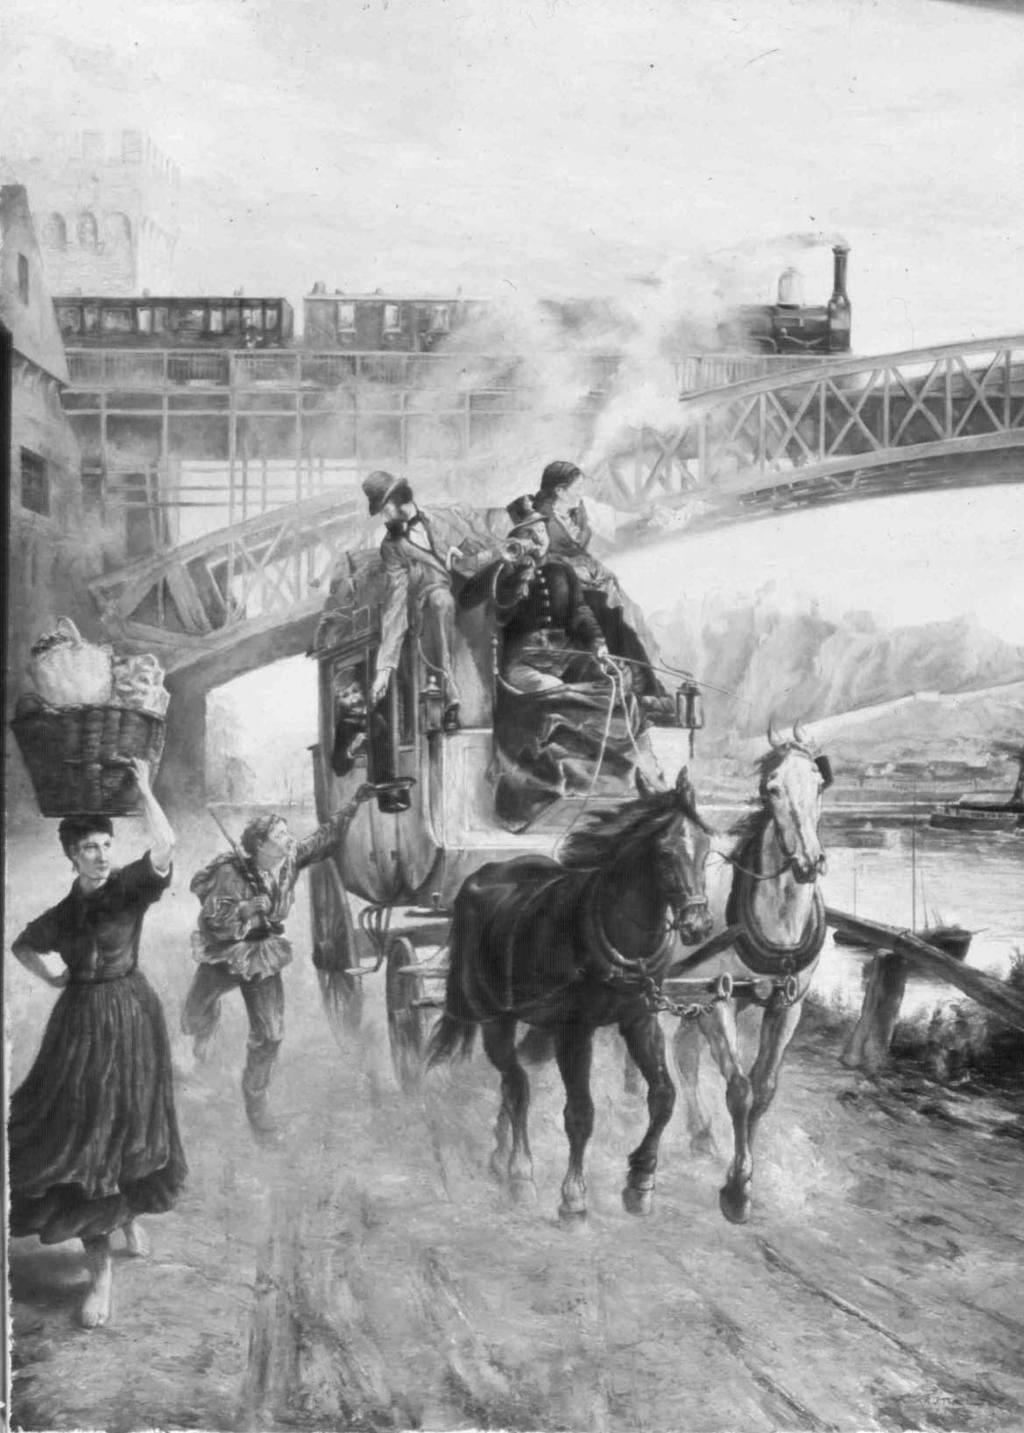 Reisen in früheren Zeiten (1): Die Reise zum Auswanderungshafen M 1 Das Gemälde von Paul Friedrich Meyerheim (1842-1915) (M 1) zeigt verschiedene Transportmittel und wege im 19. Jahrhundert.